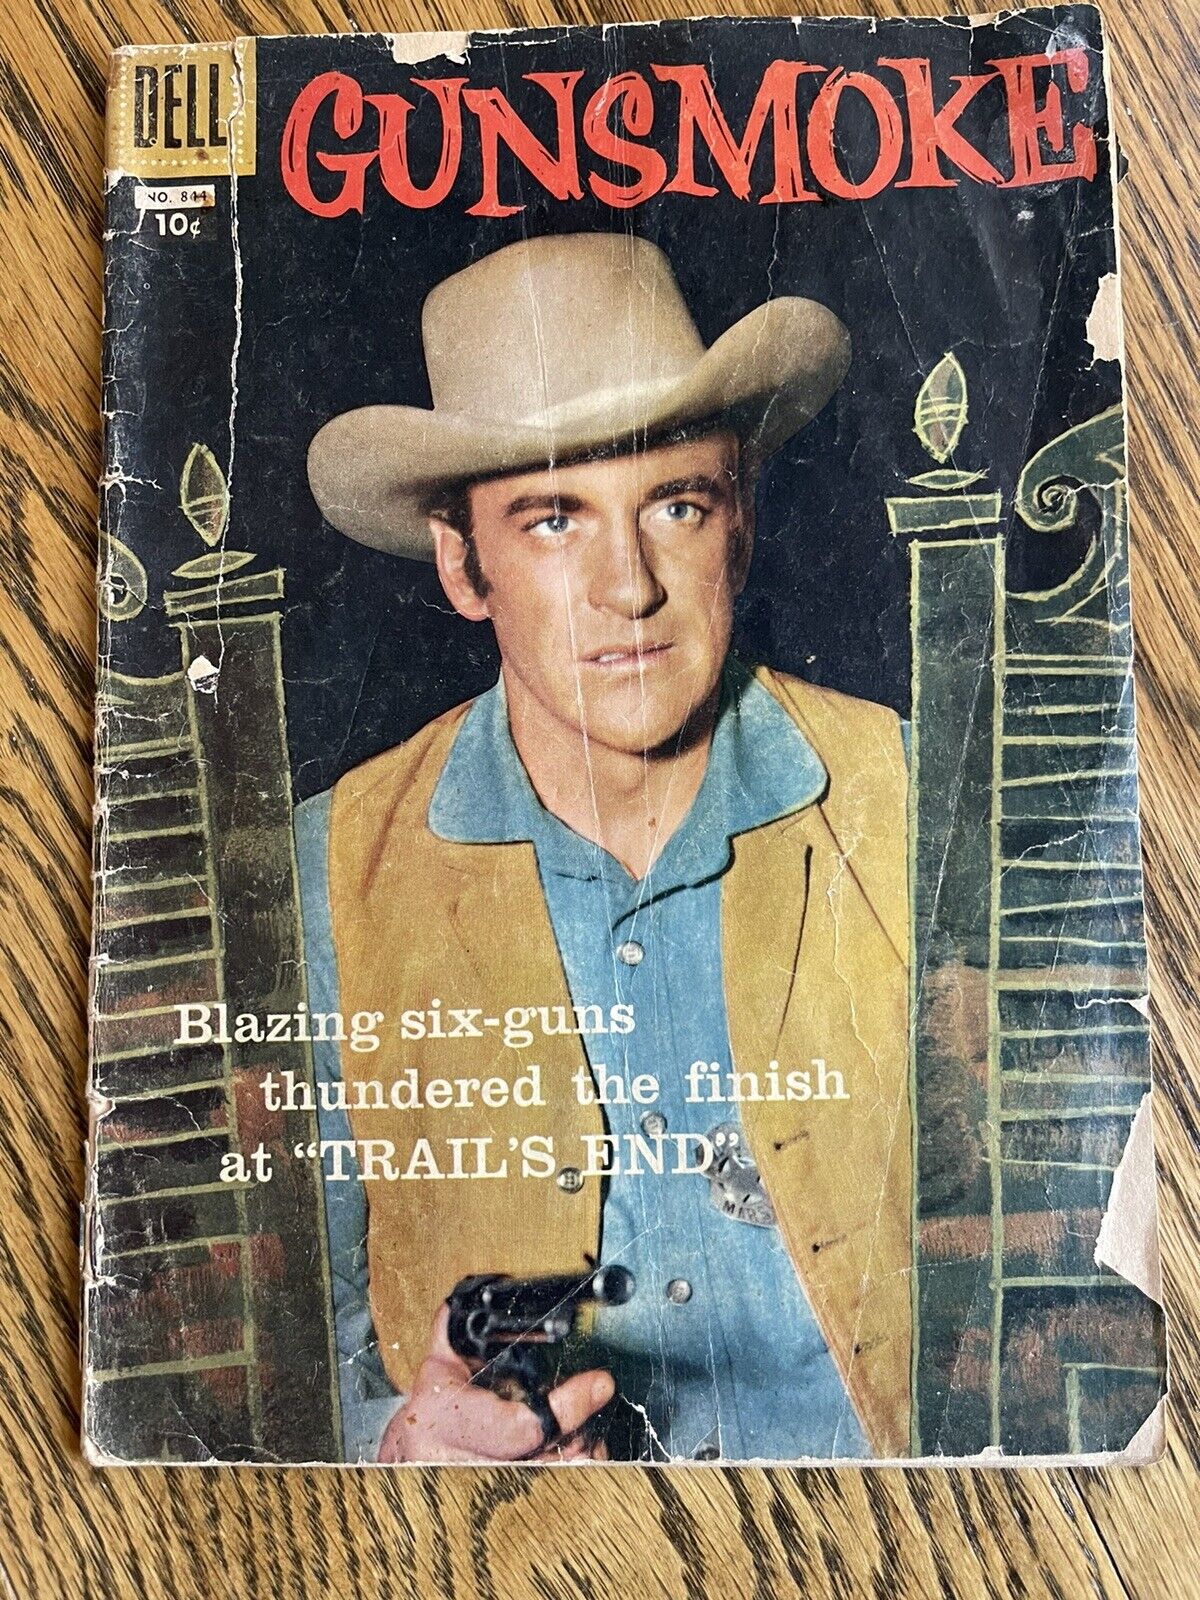 Gunsmoke #5 issue FC 844 Dell TV Comic Matt Dillon James Arness Black cover 1957